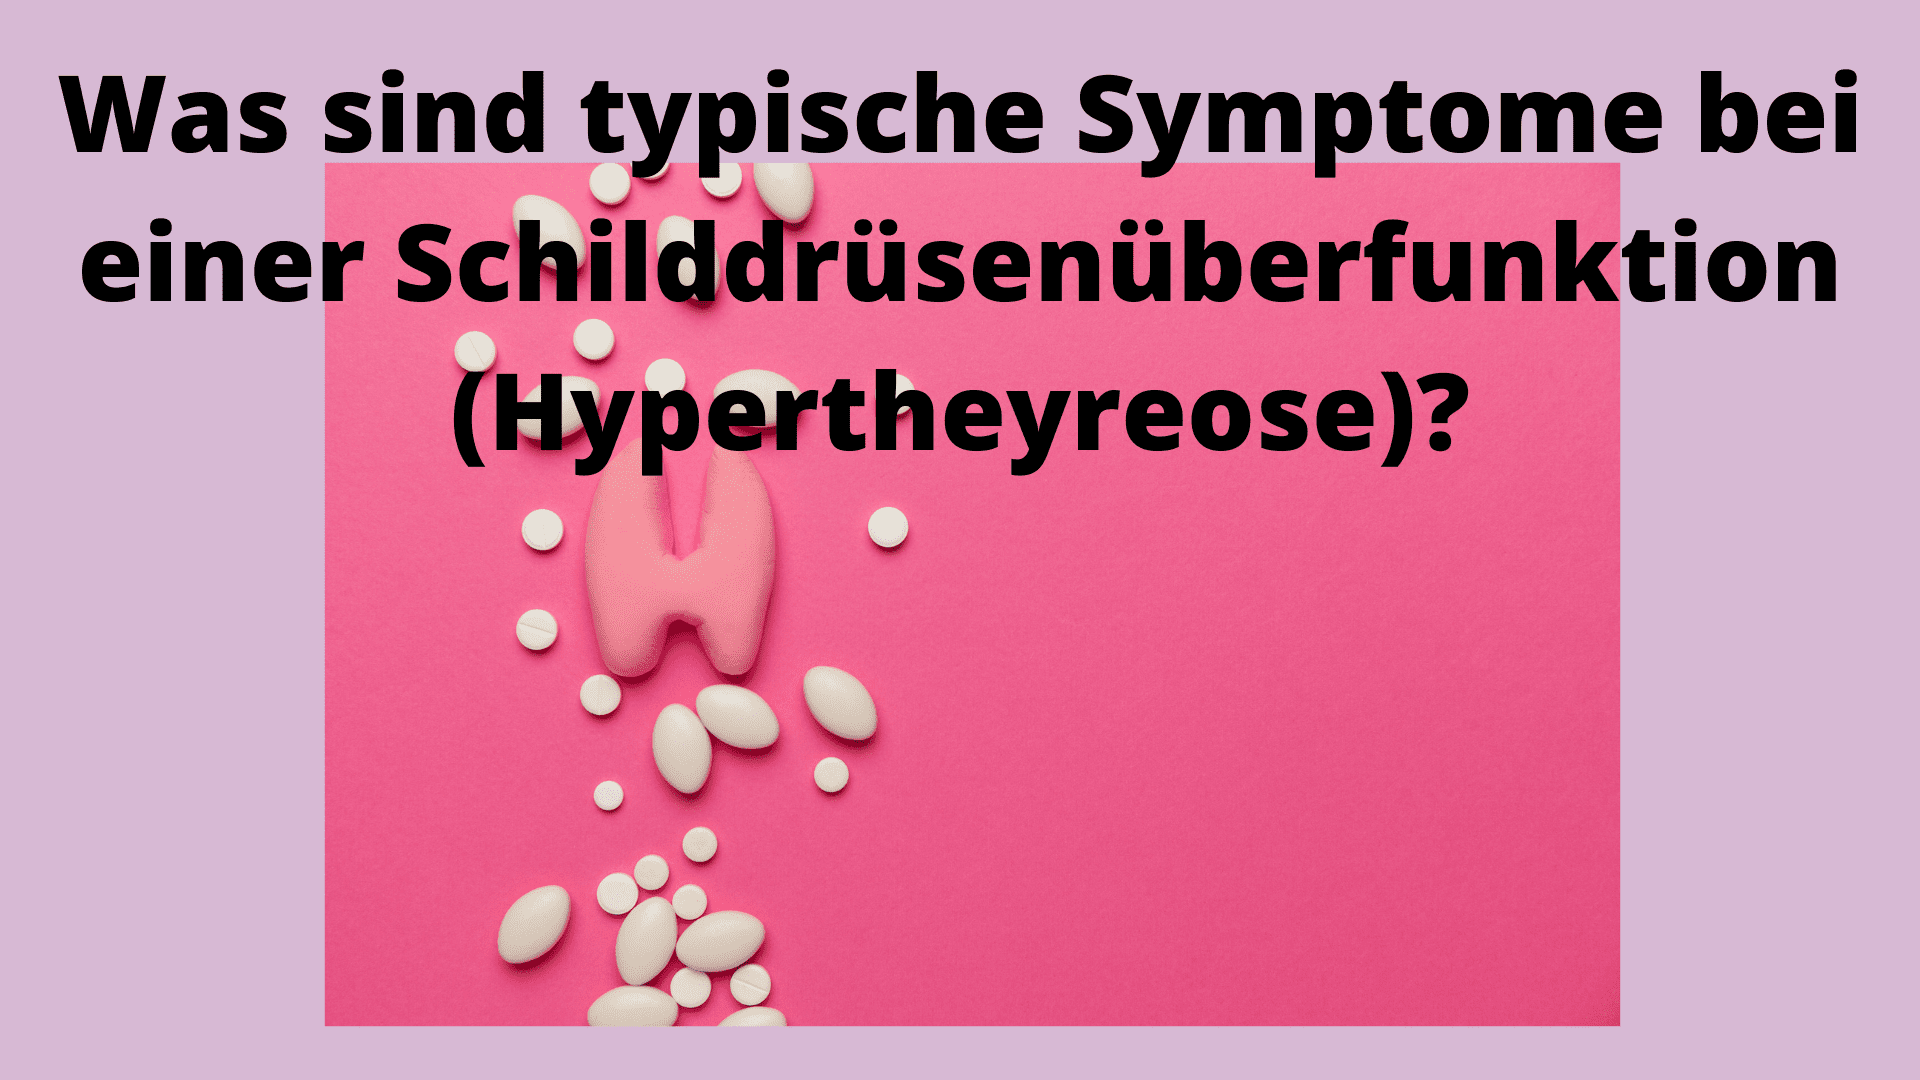 Typische Symptome einer Schilddrüsenüberfunktion; Bild mit eiern Schilddrüse und Tabletten